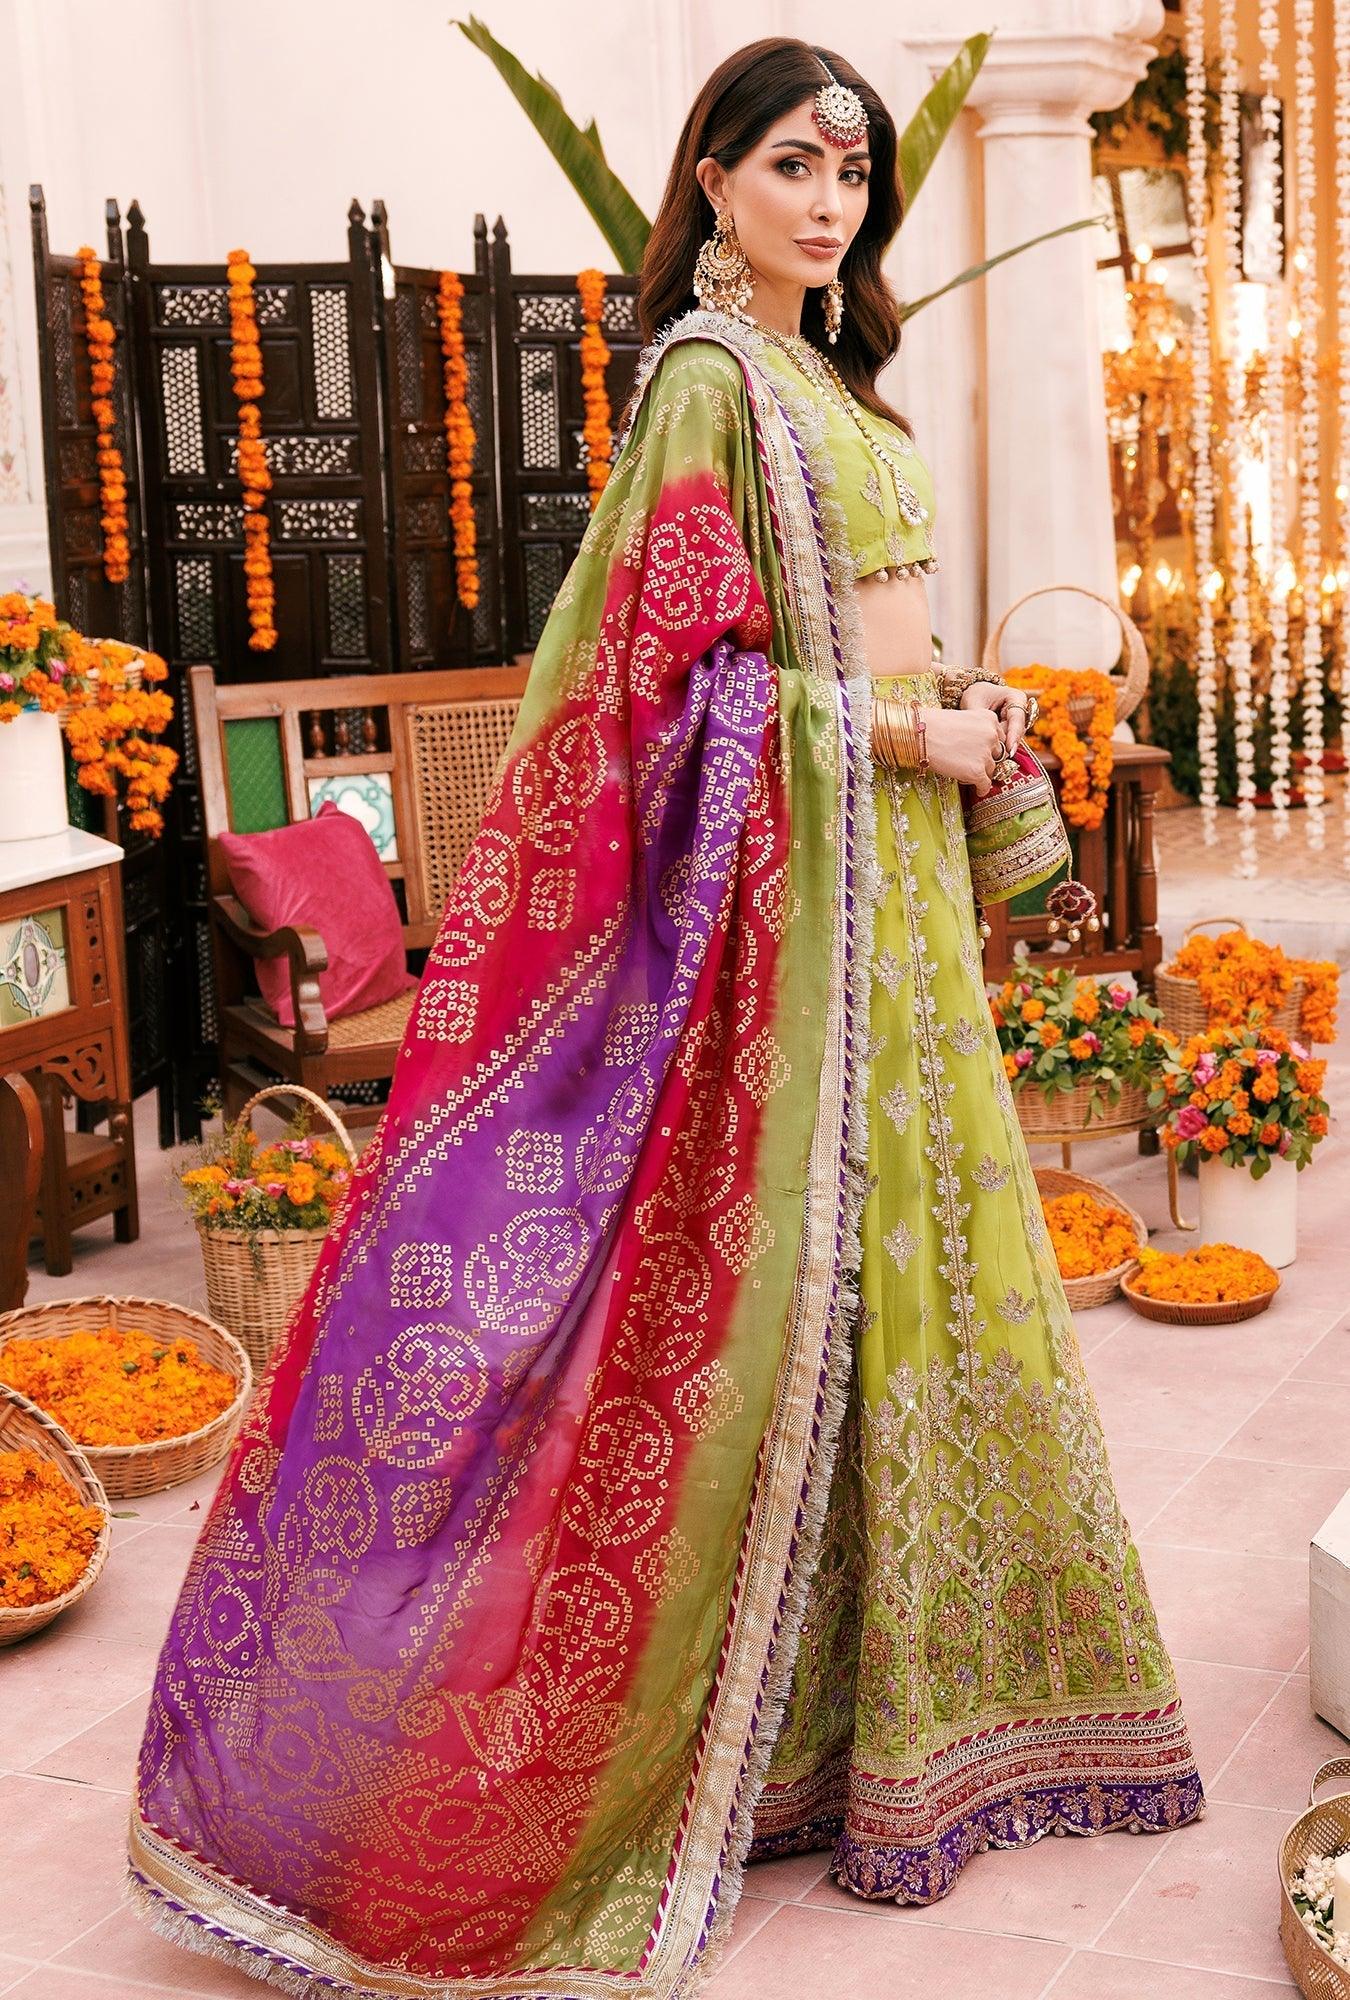 Arsia 08 - Noor Wedding Collection 2022 - Arsia 08 - Noor Wedding Collection 2022 - Shahana Collection